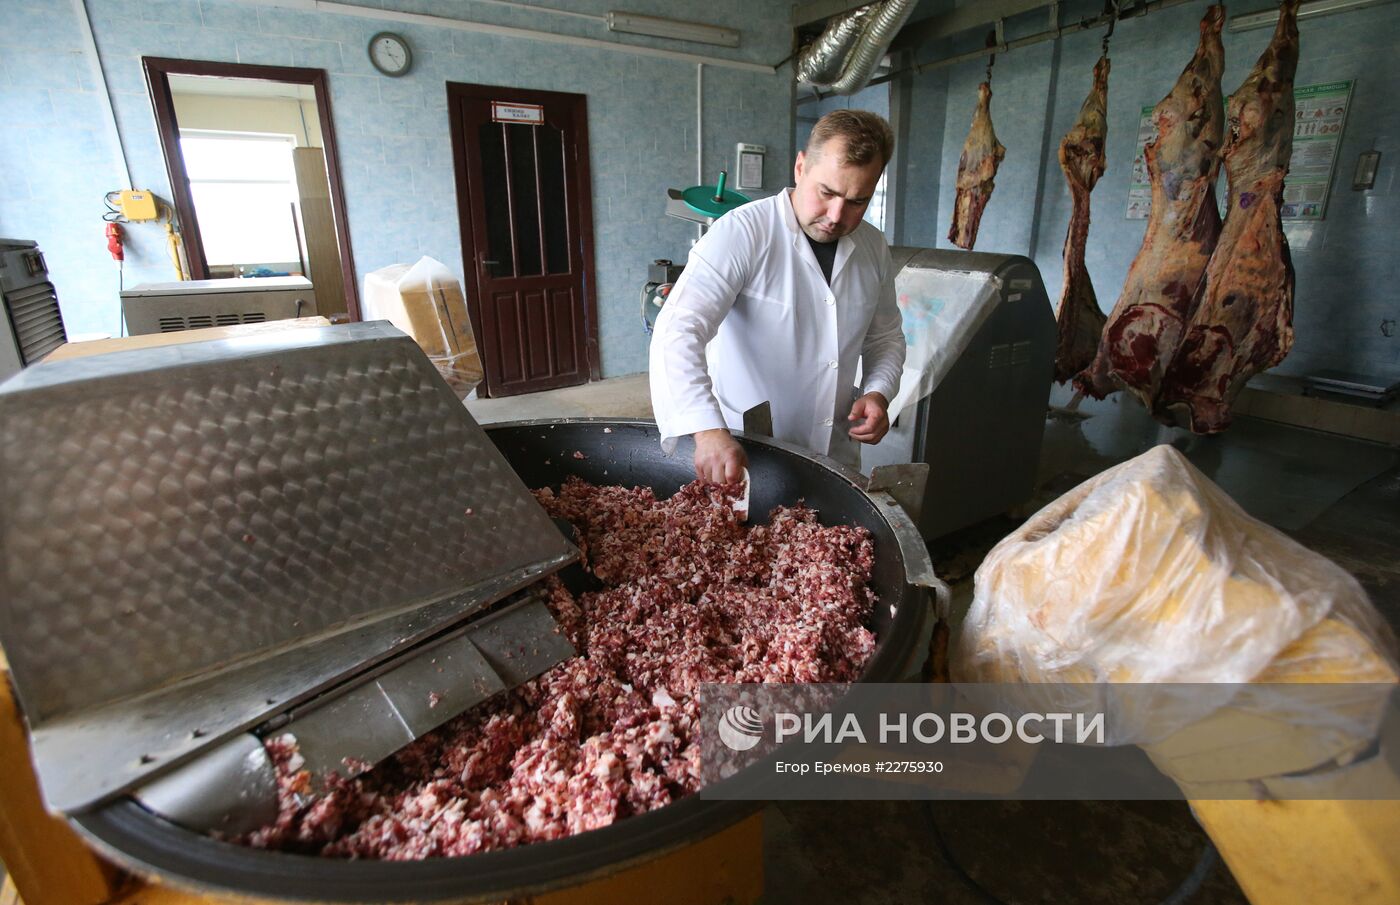 Россельхознадзор усилит контроль мясной продукции из Белоруссии